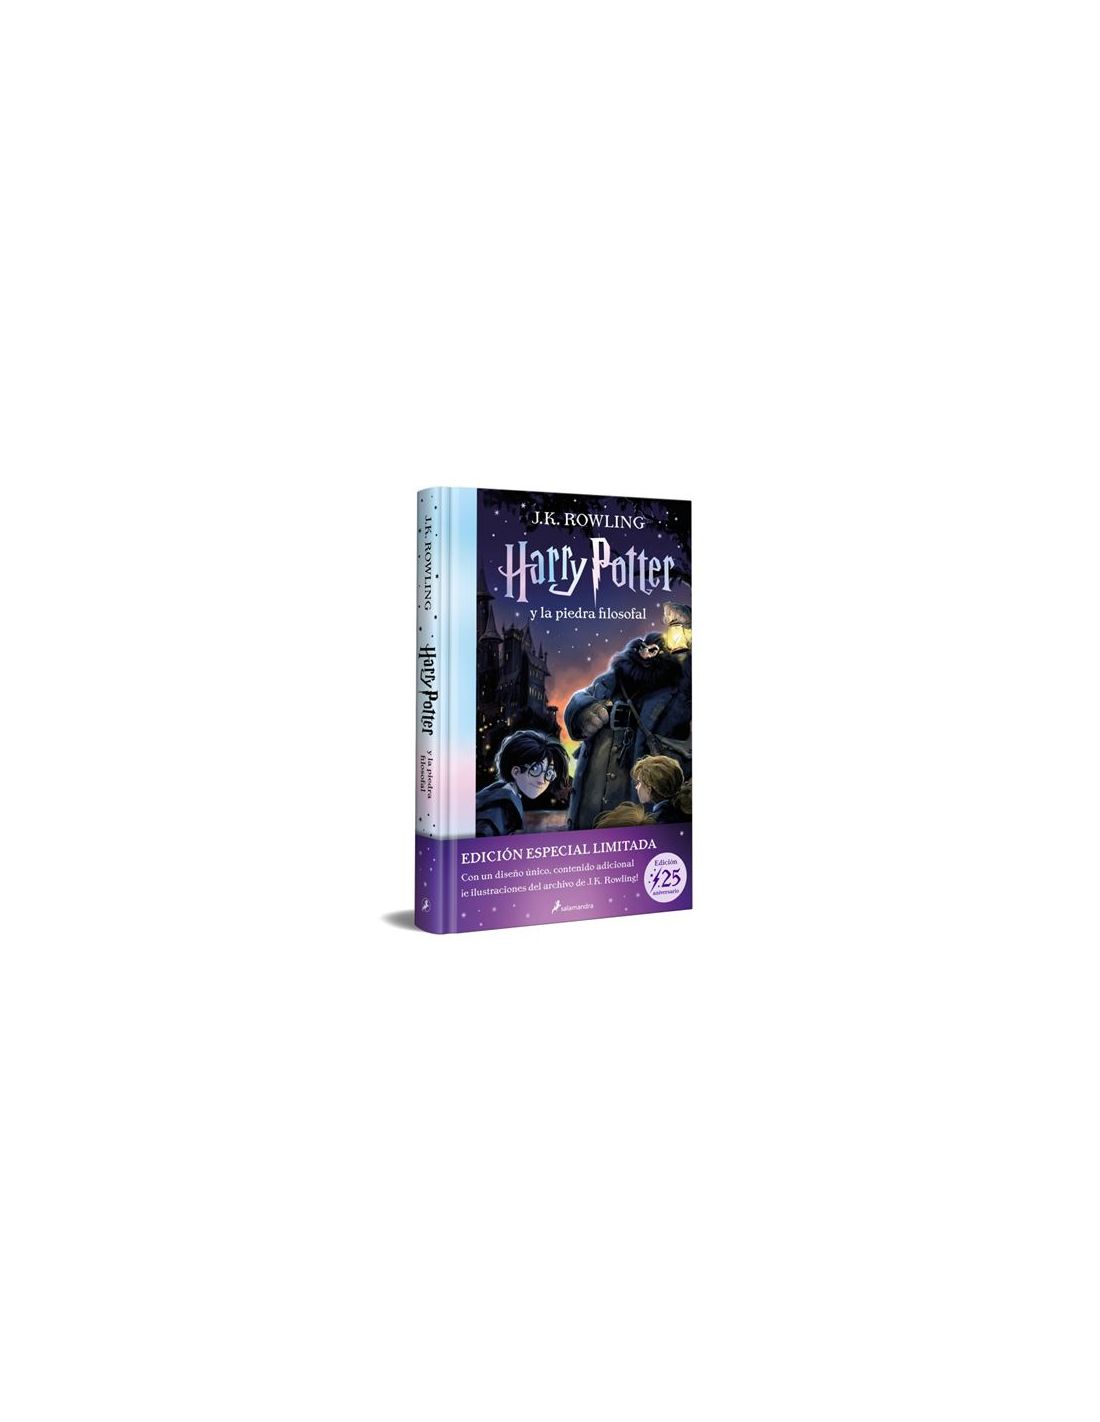 25 regalos de Harry Potter que todos quieren para navidad